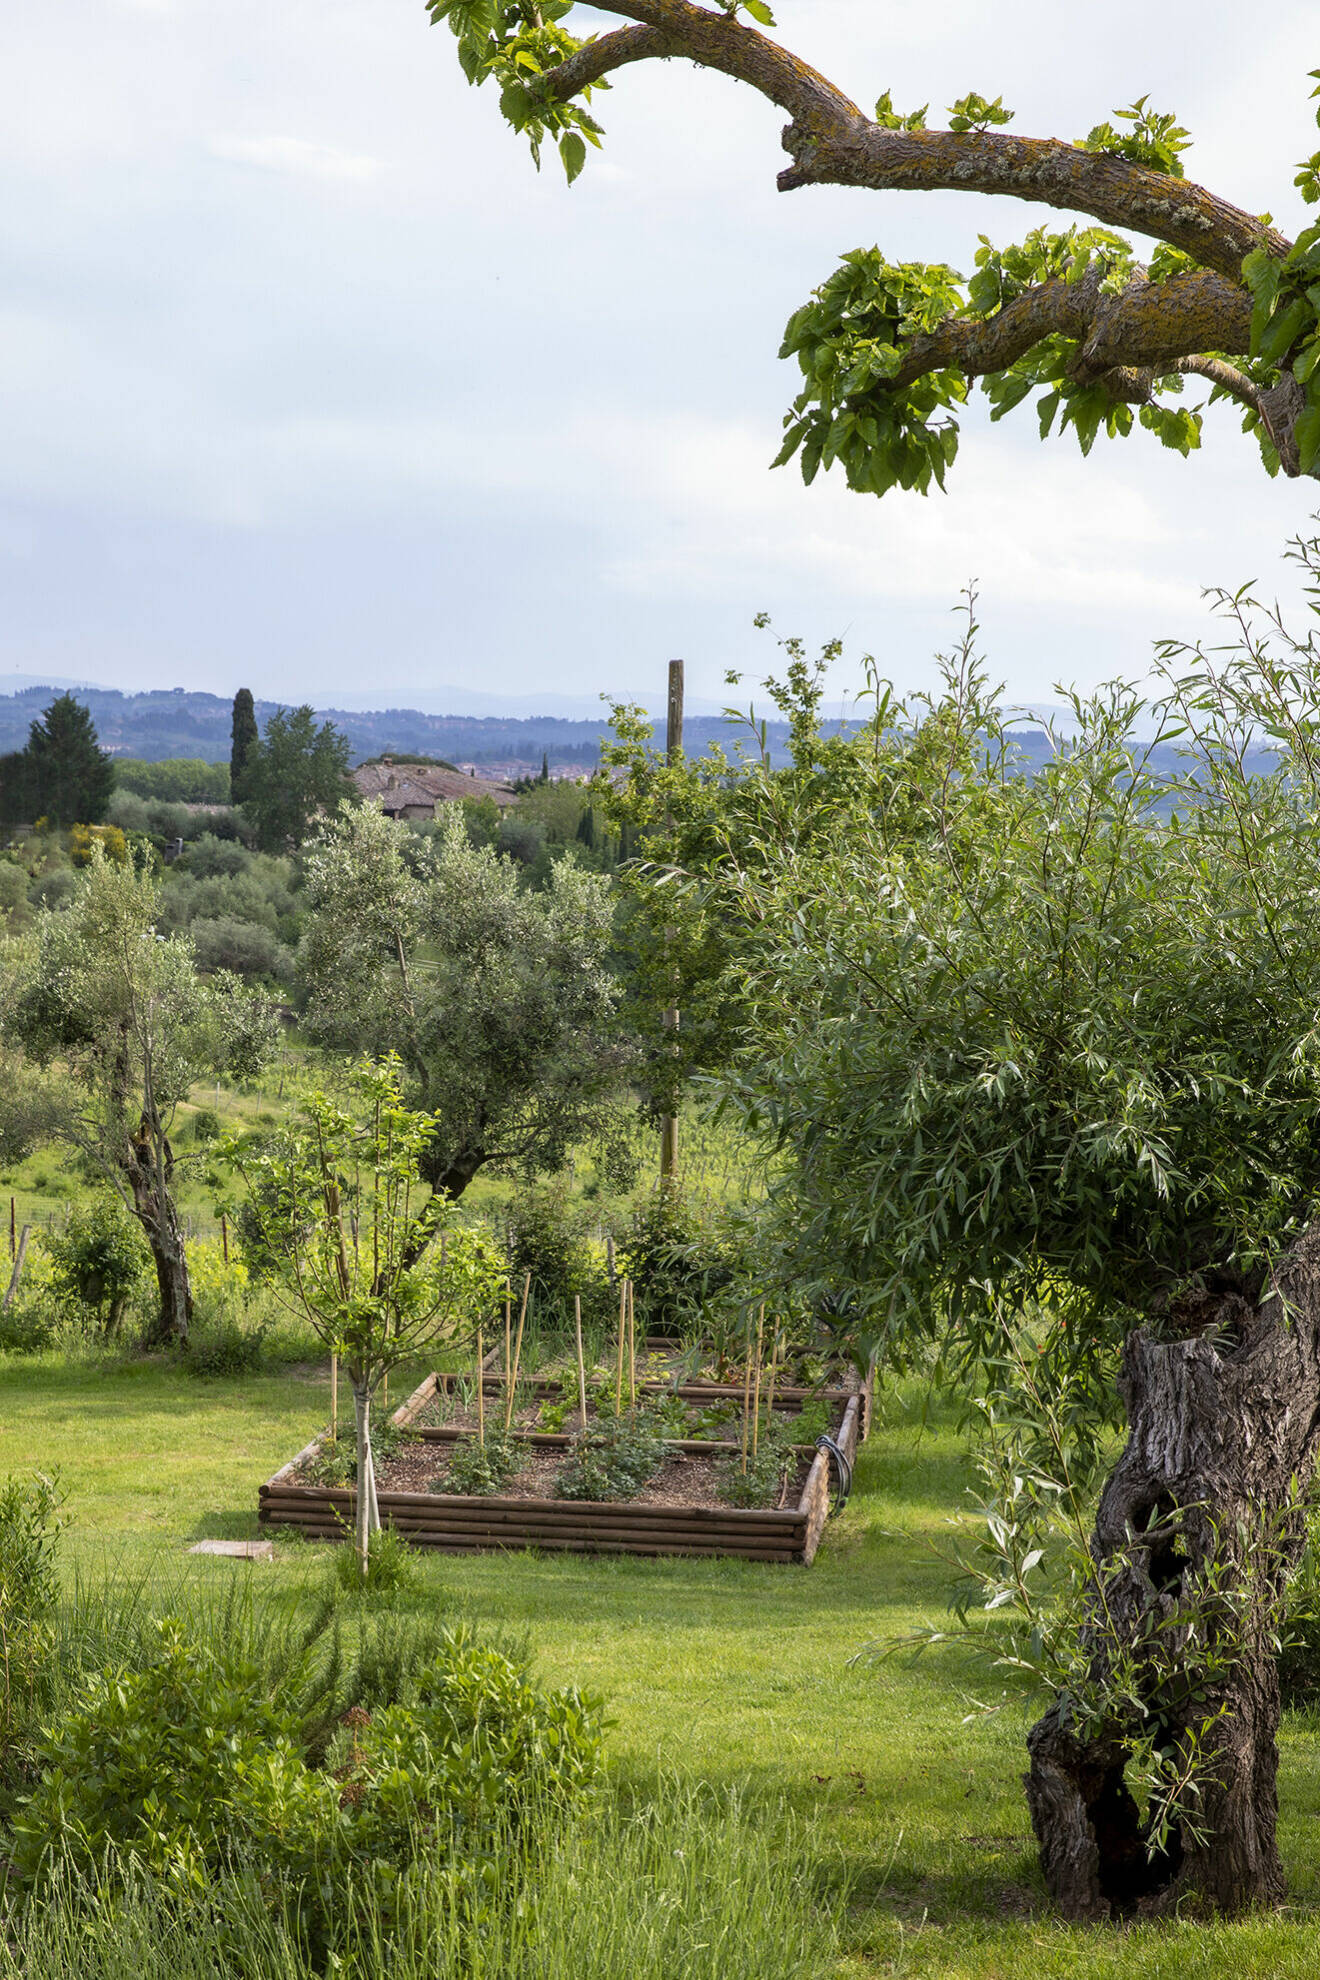 Landskapet runt Siena i Chianti bjuder på en klassisk siluett med böljande kullar och olivlundar. Liselotte och hennes man har precis börjat sätta fart med planeringen av sin trädgård.